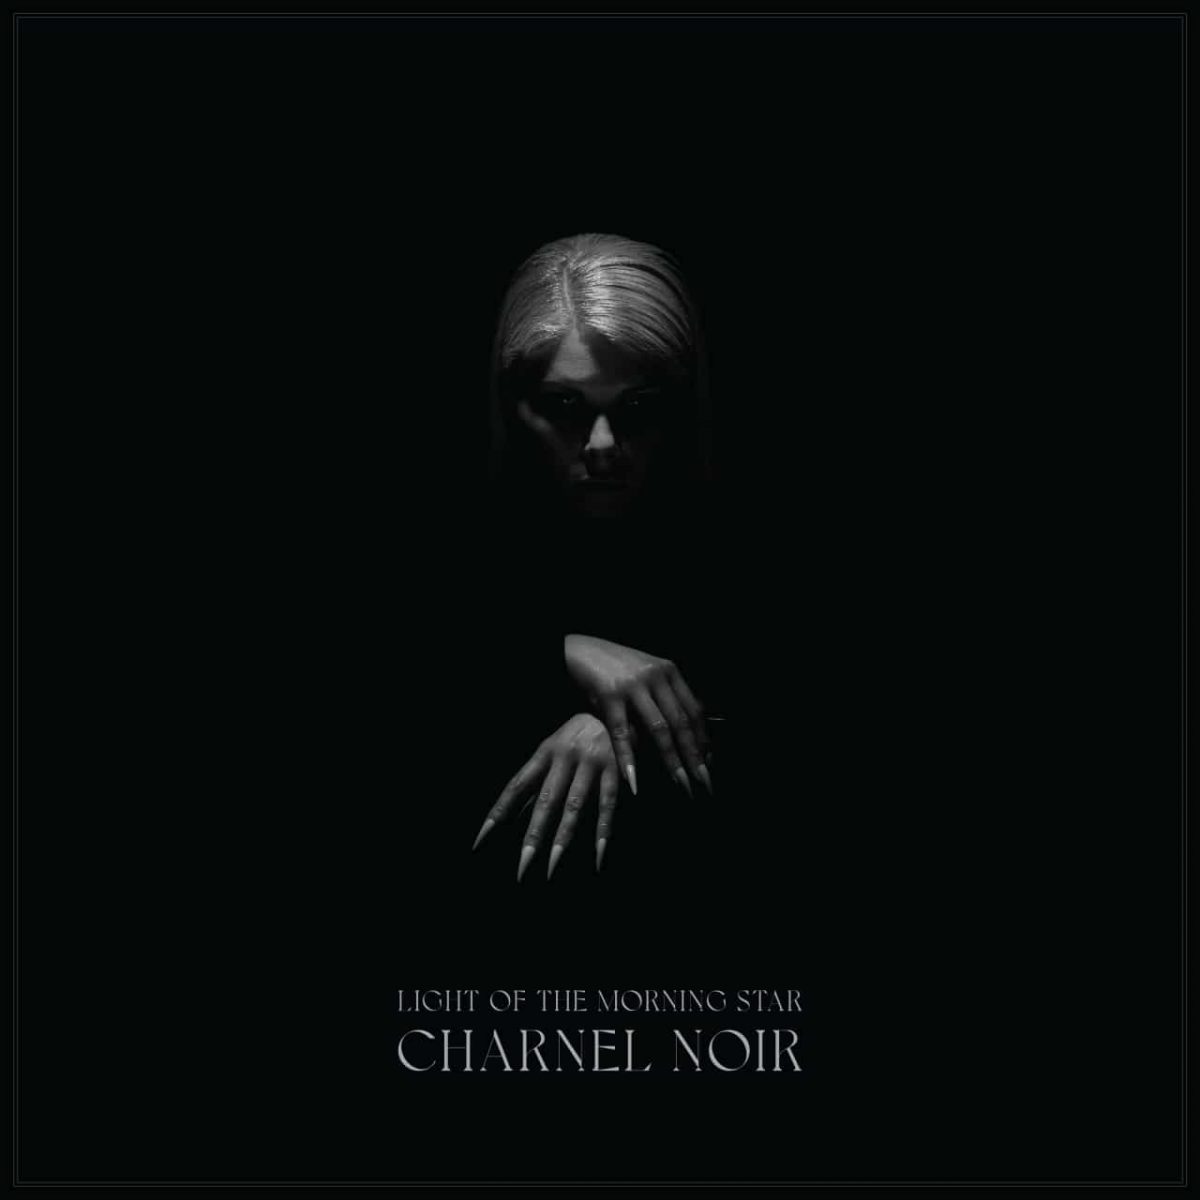 light-of-the-morning-star-charnel-noir-album-cover